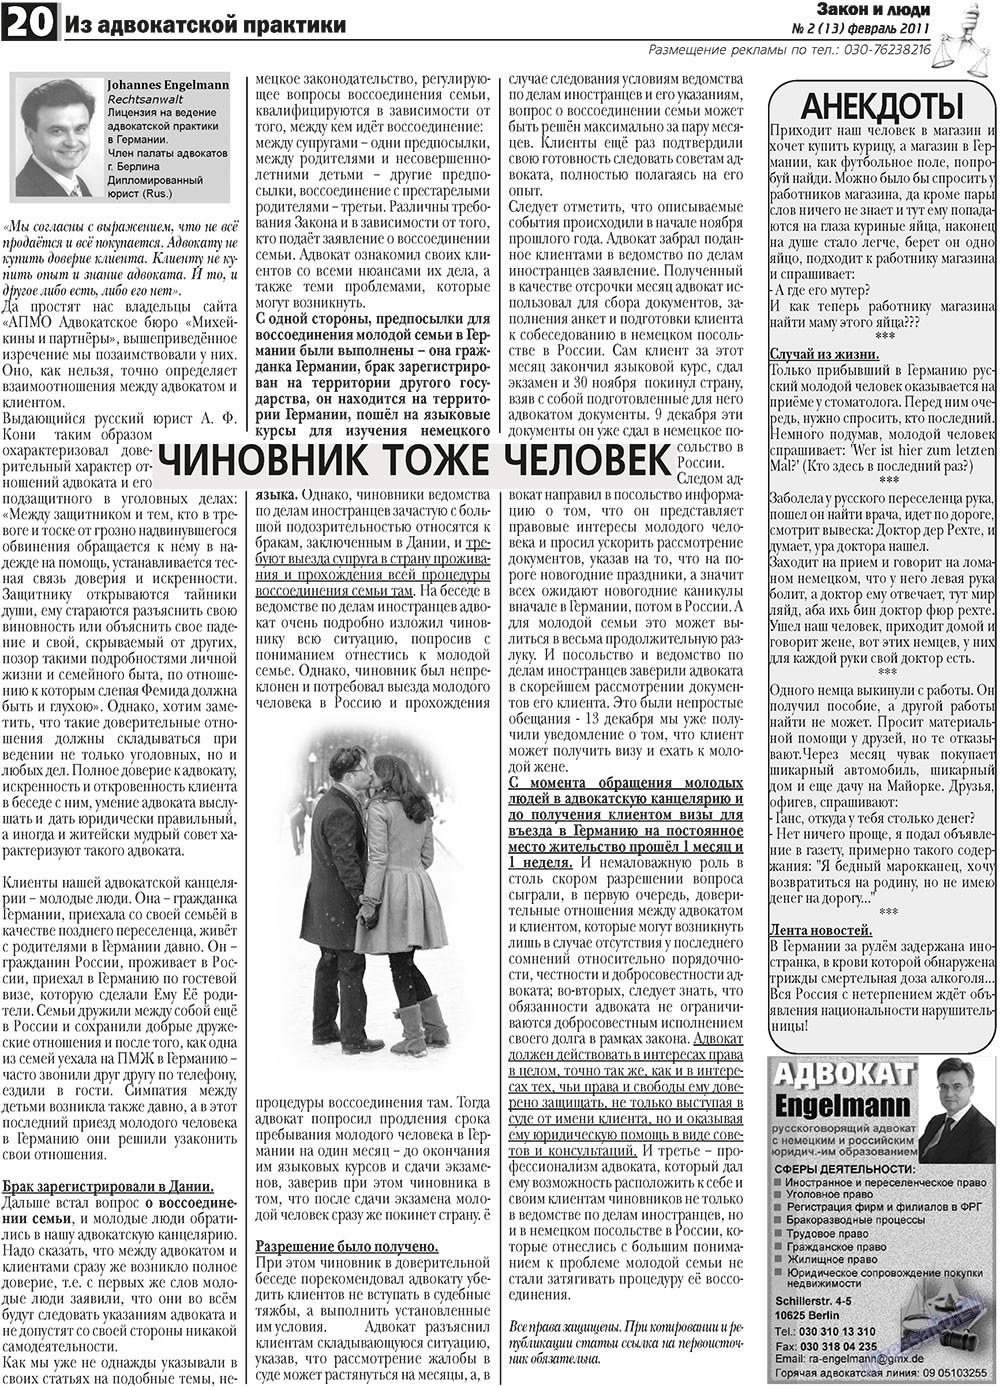 Закон и люди, газета. 2011 №2 стр.20